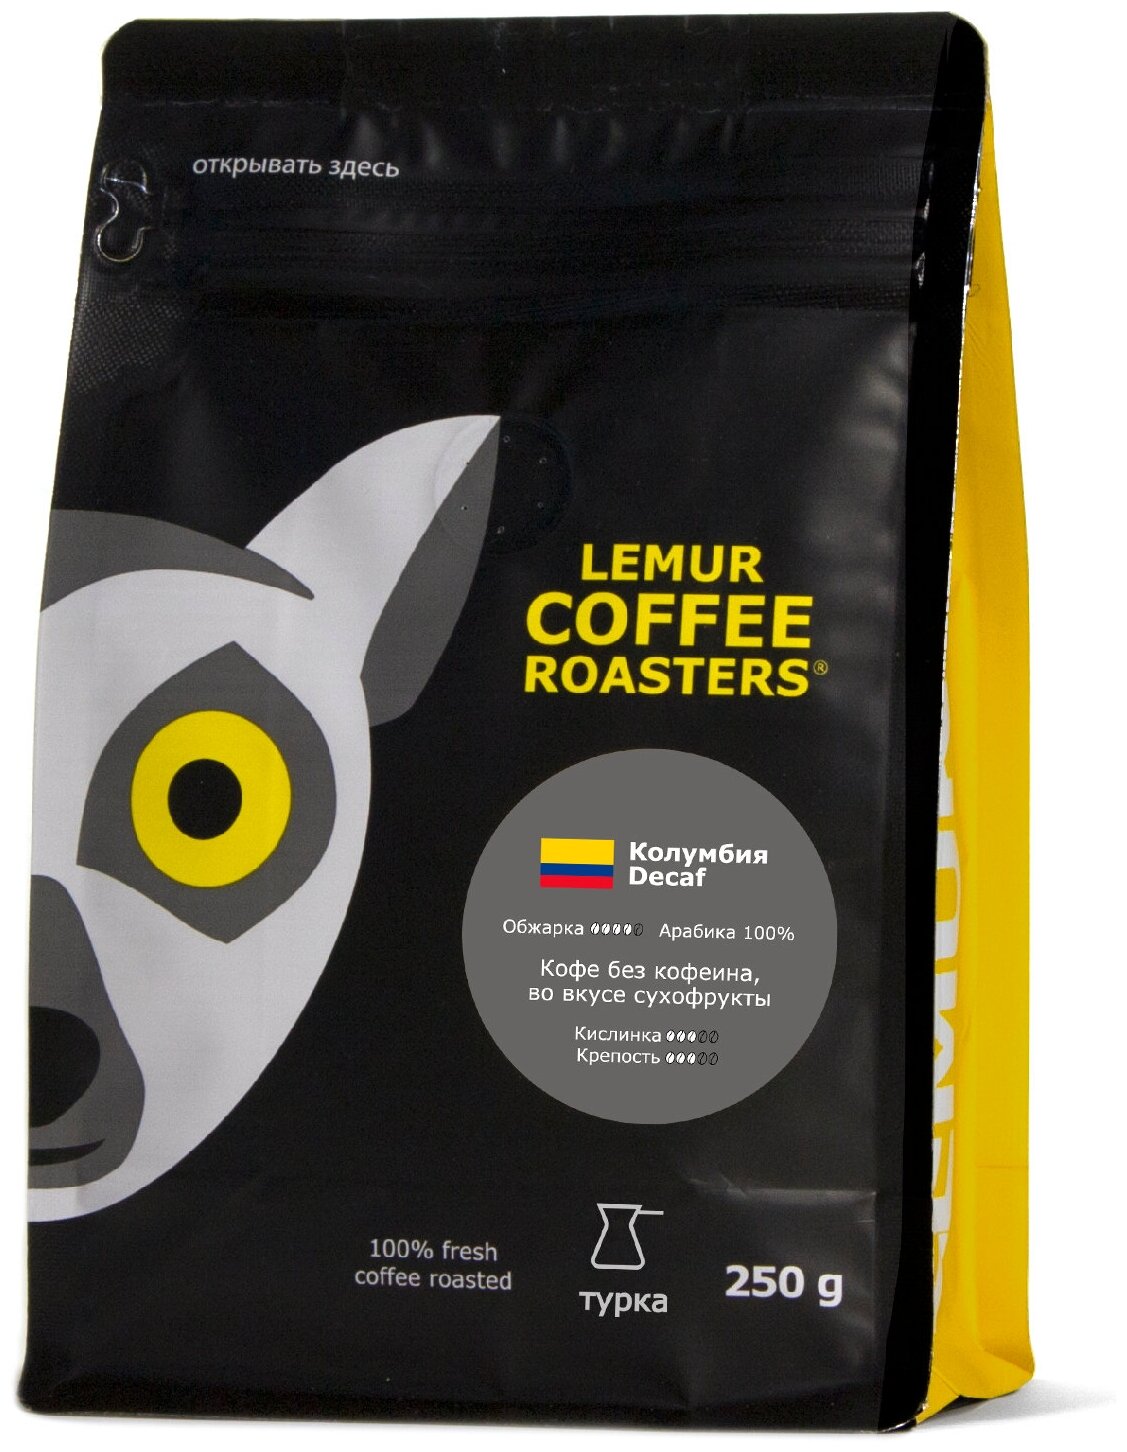 Свежеобжаренный кофе молотый Колумбия Decaf Эспрессо Lemur Coffee Roasters, мелкий помол, 250 г